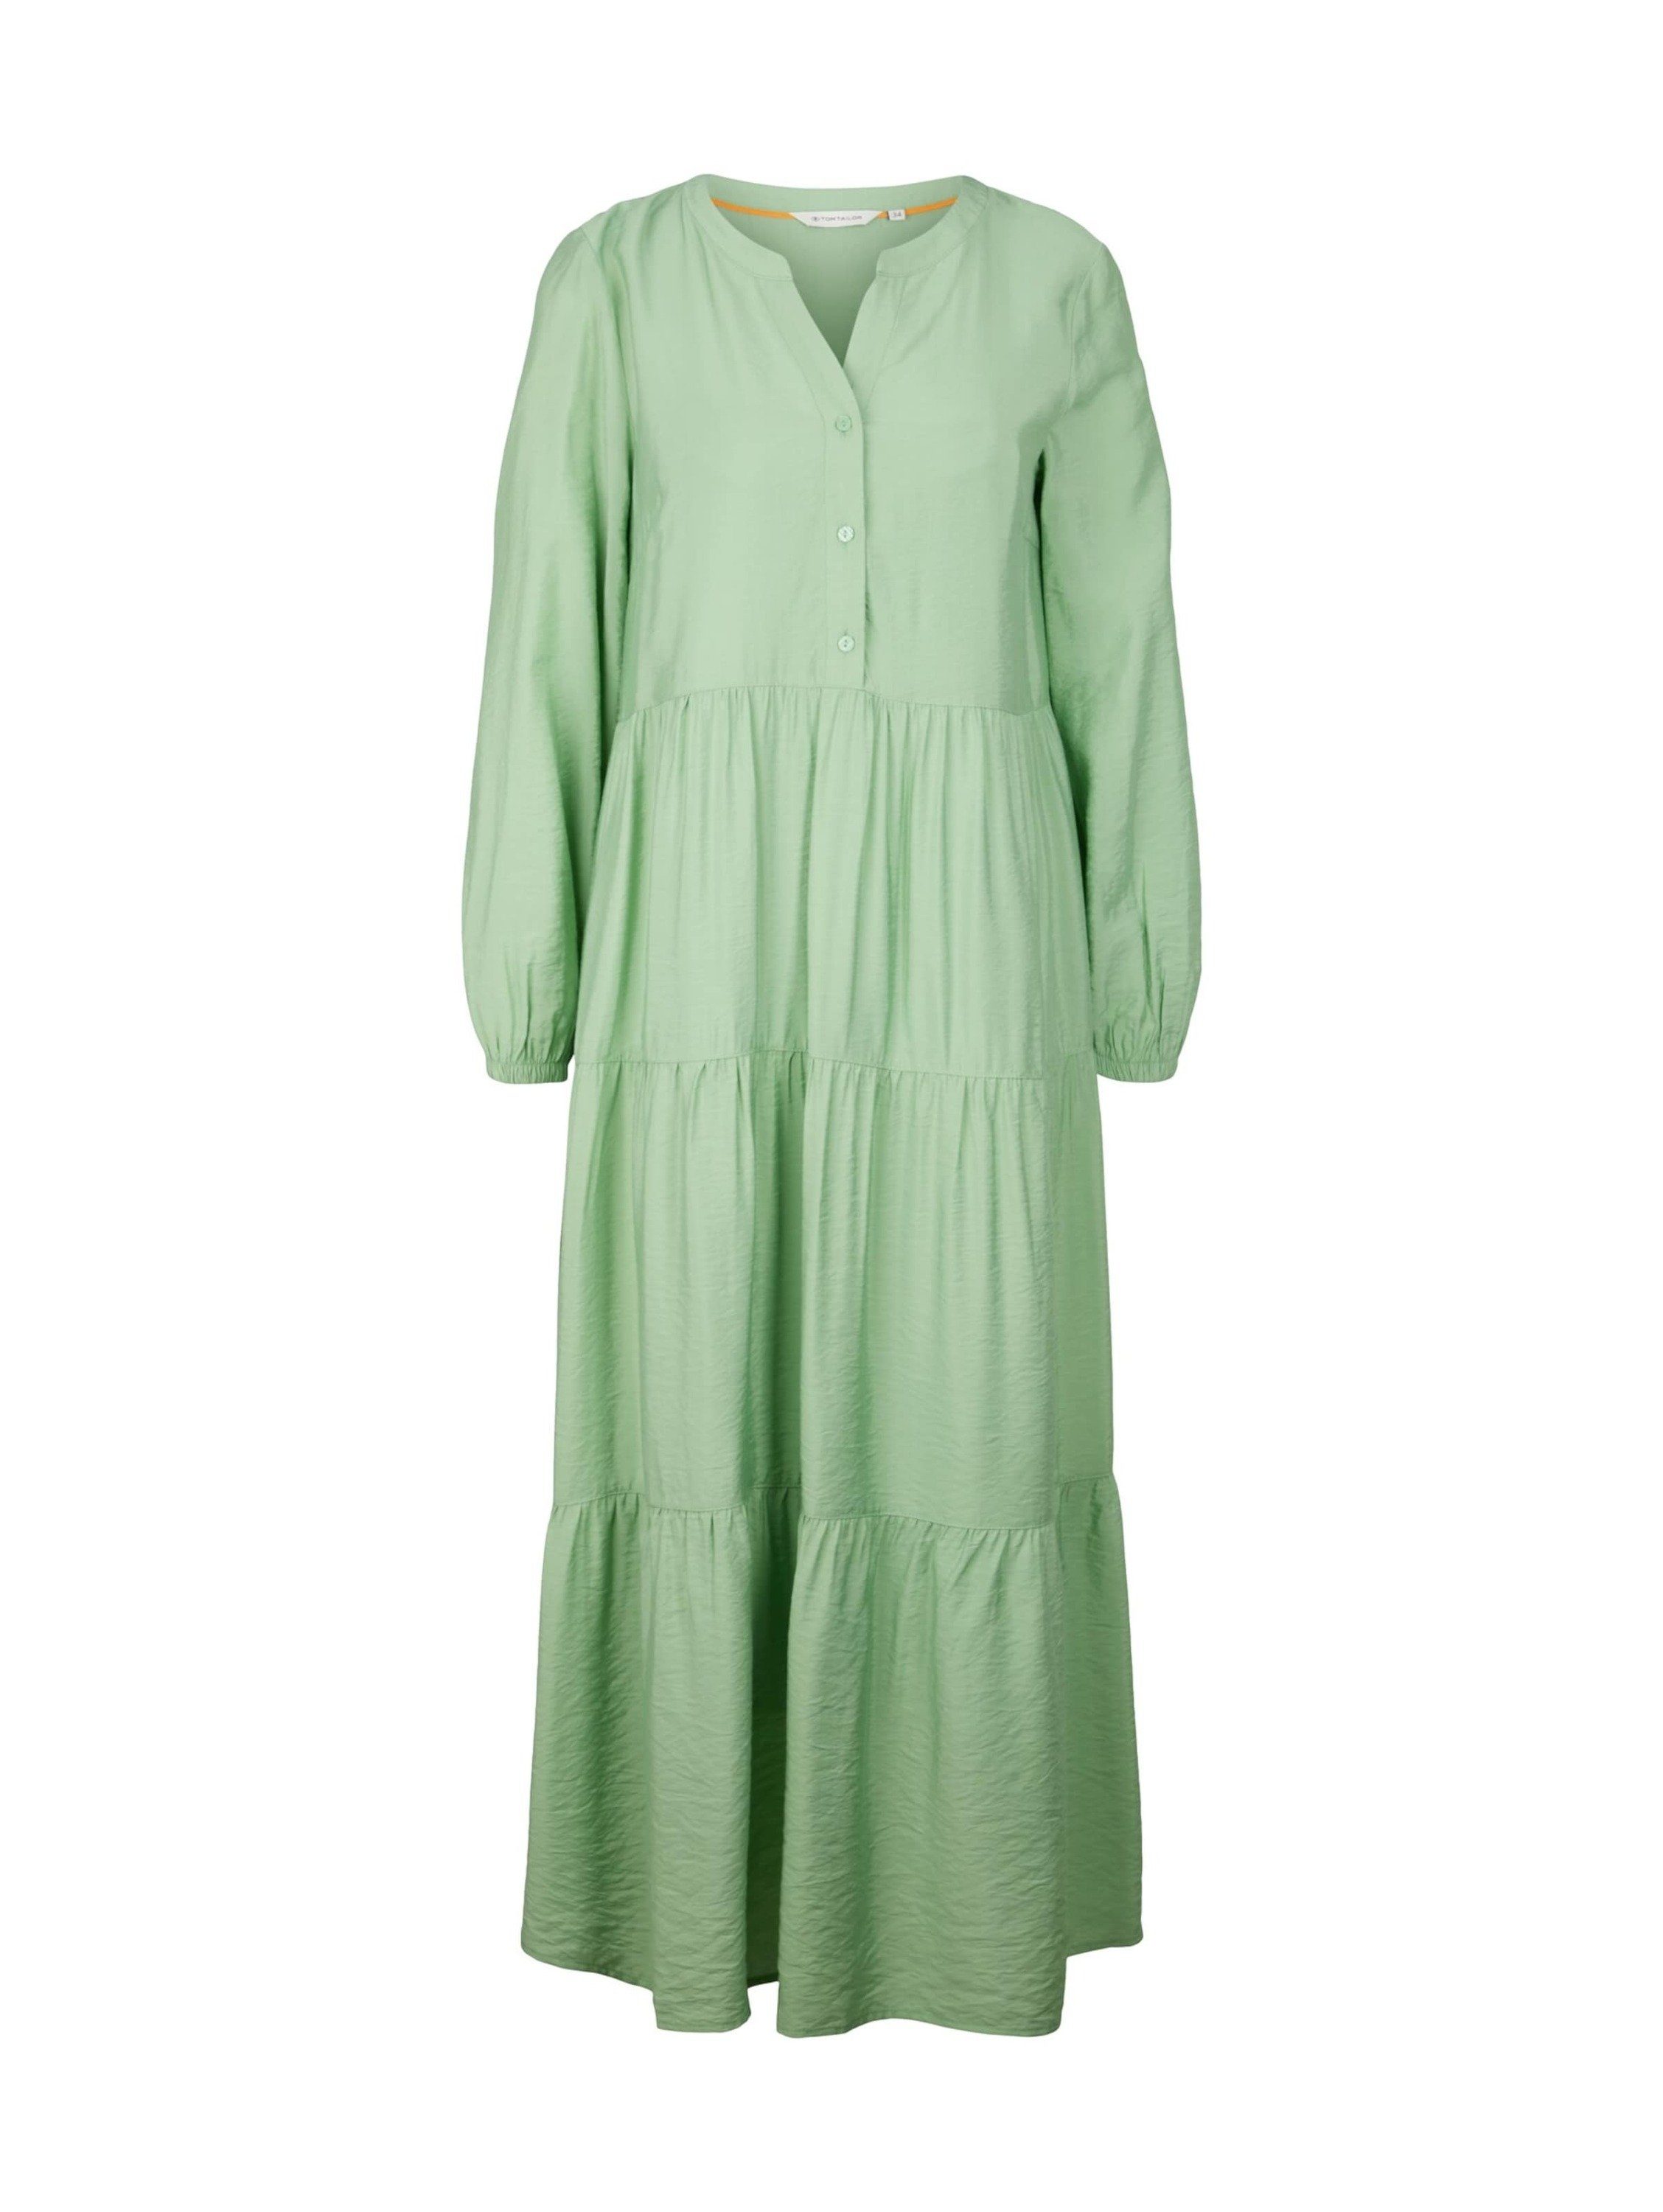 Grüne Tom für Kleider | OTTO Damen Tailor kaufen online